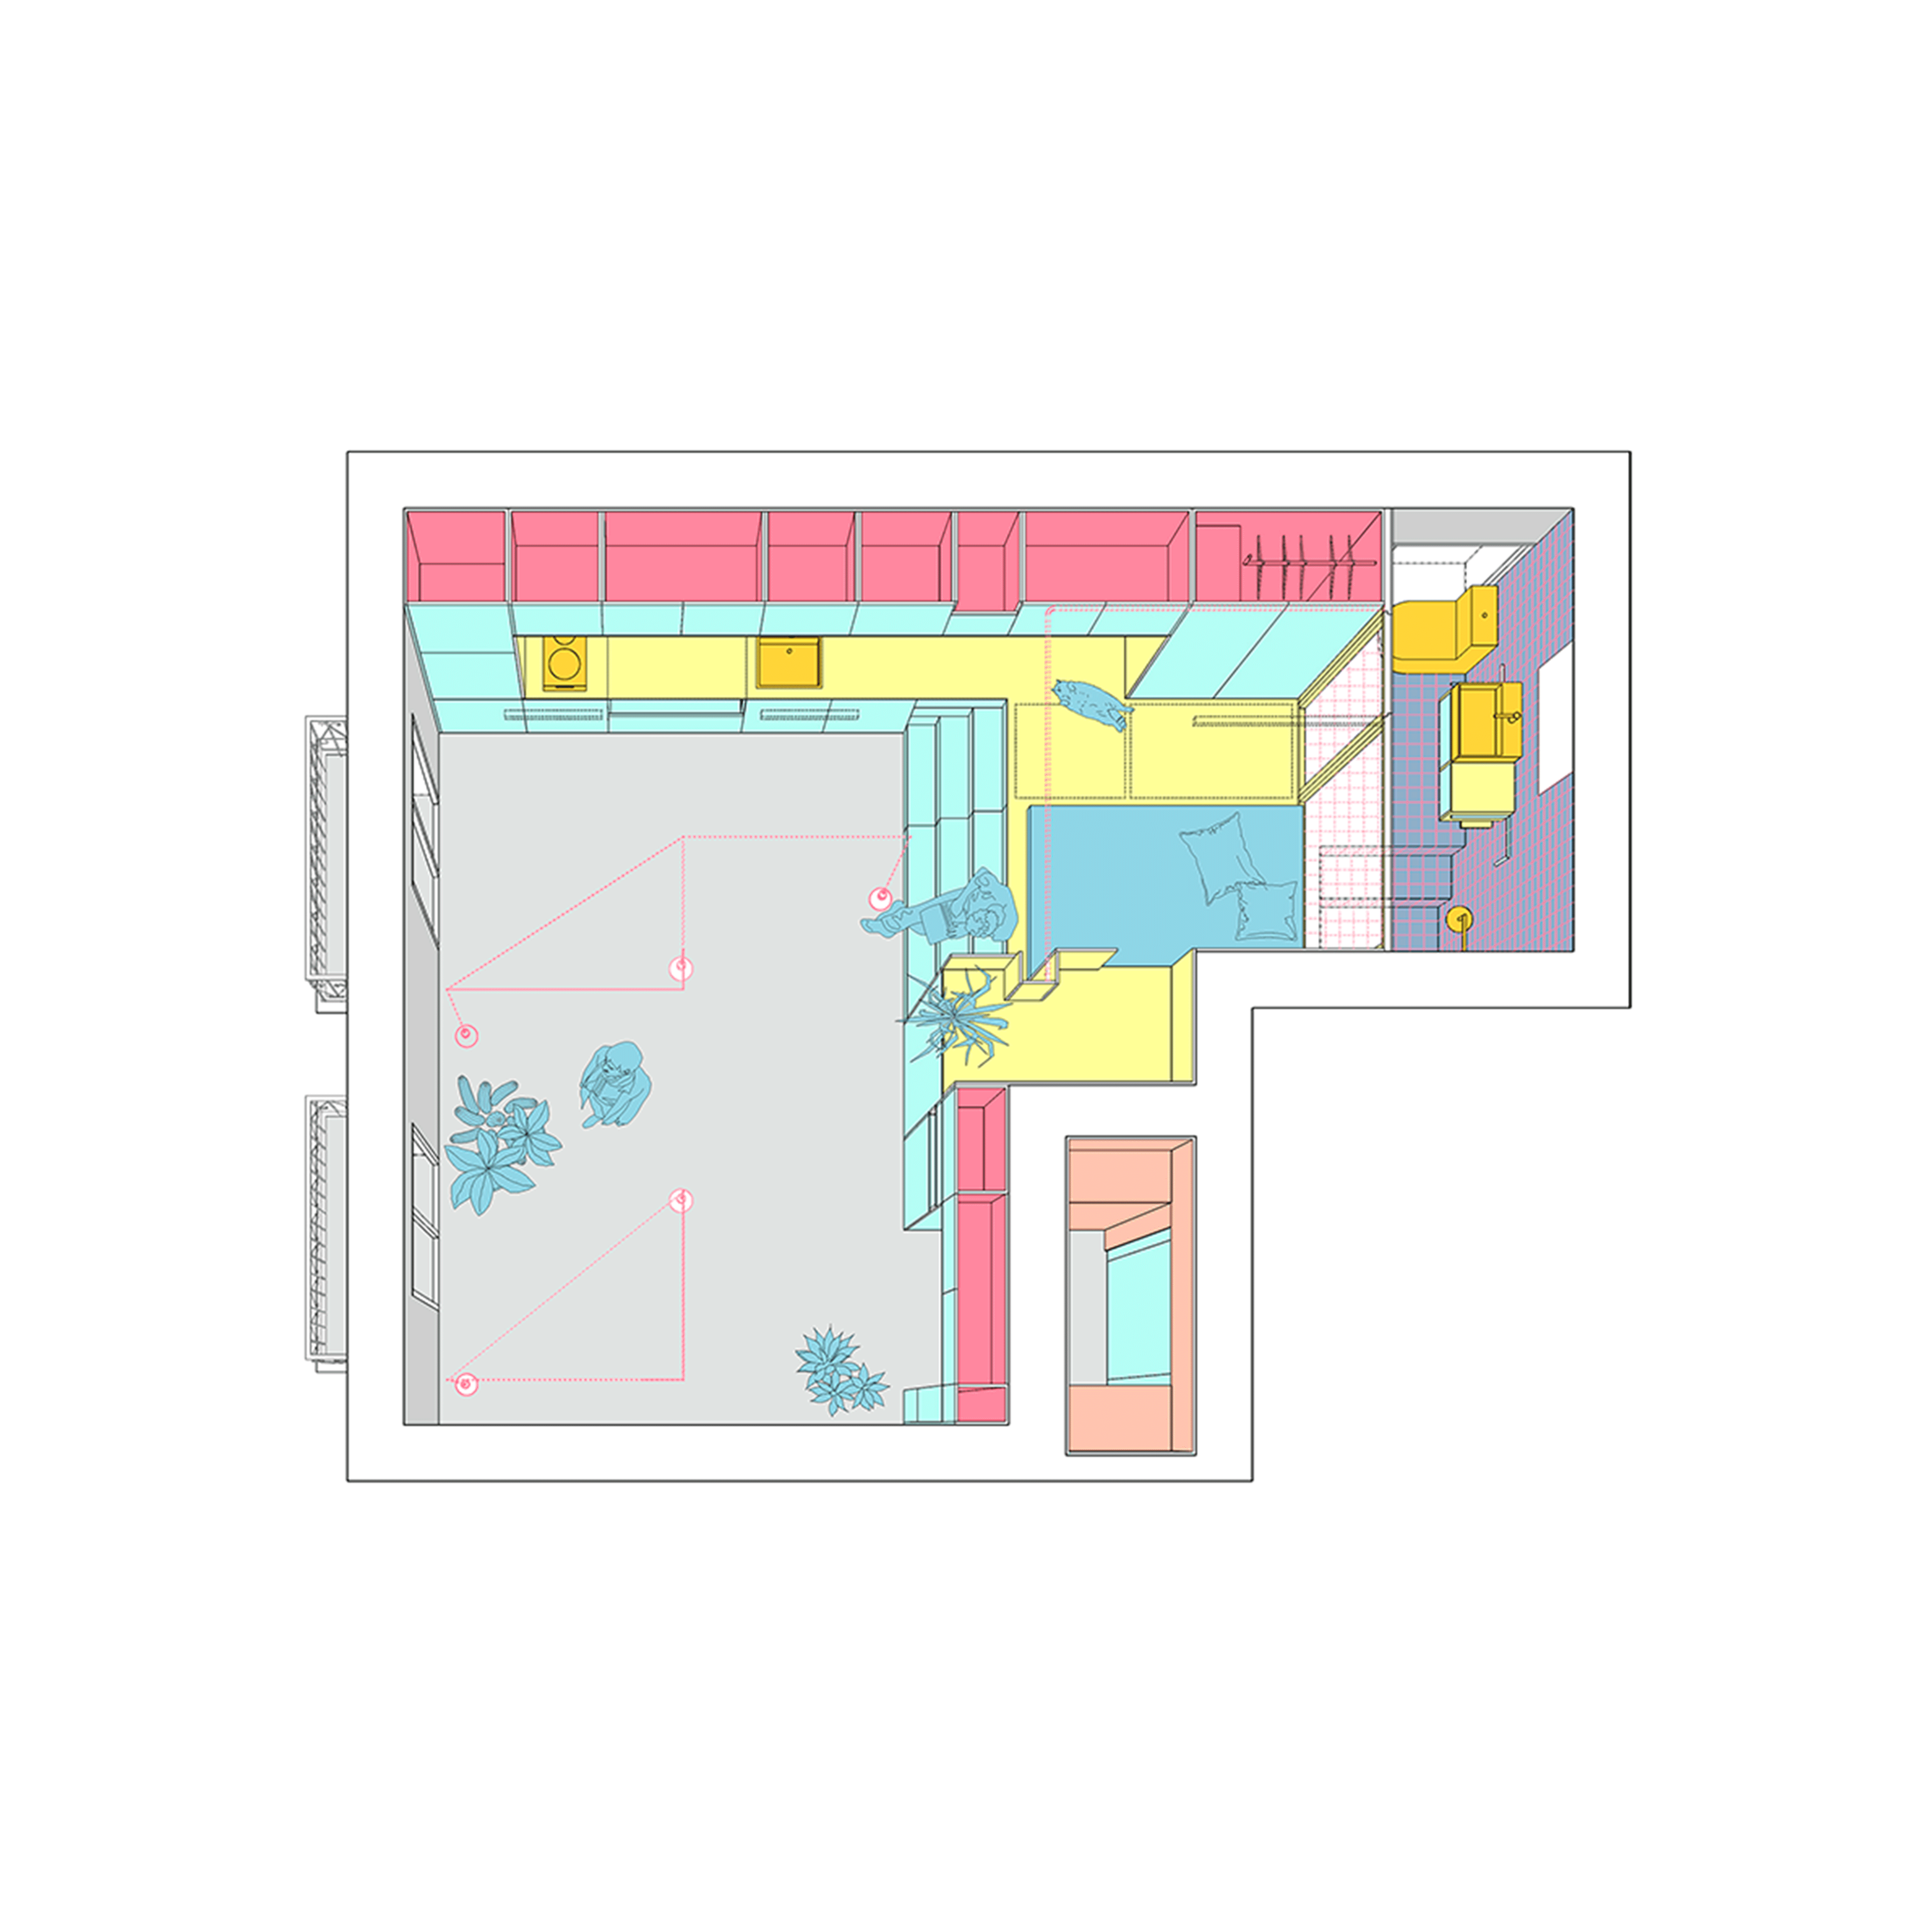 Độc đáo căn hộ 33 m2 có thể tháo lắp mọi thứ như một trò xếp hình - Ảnh 9.